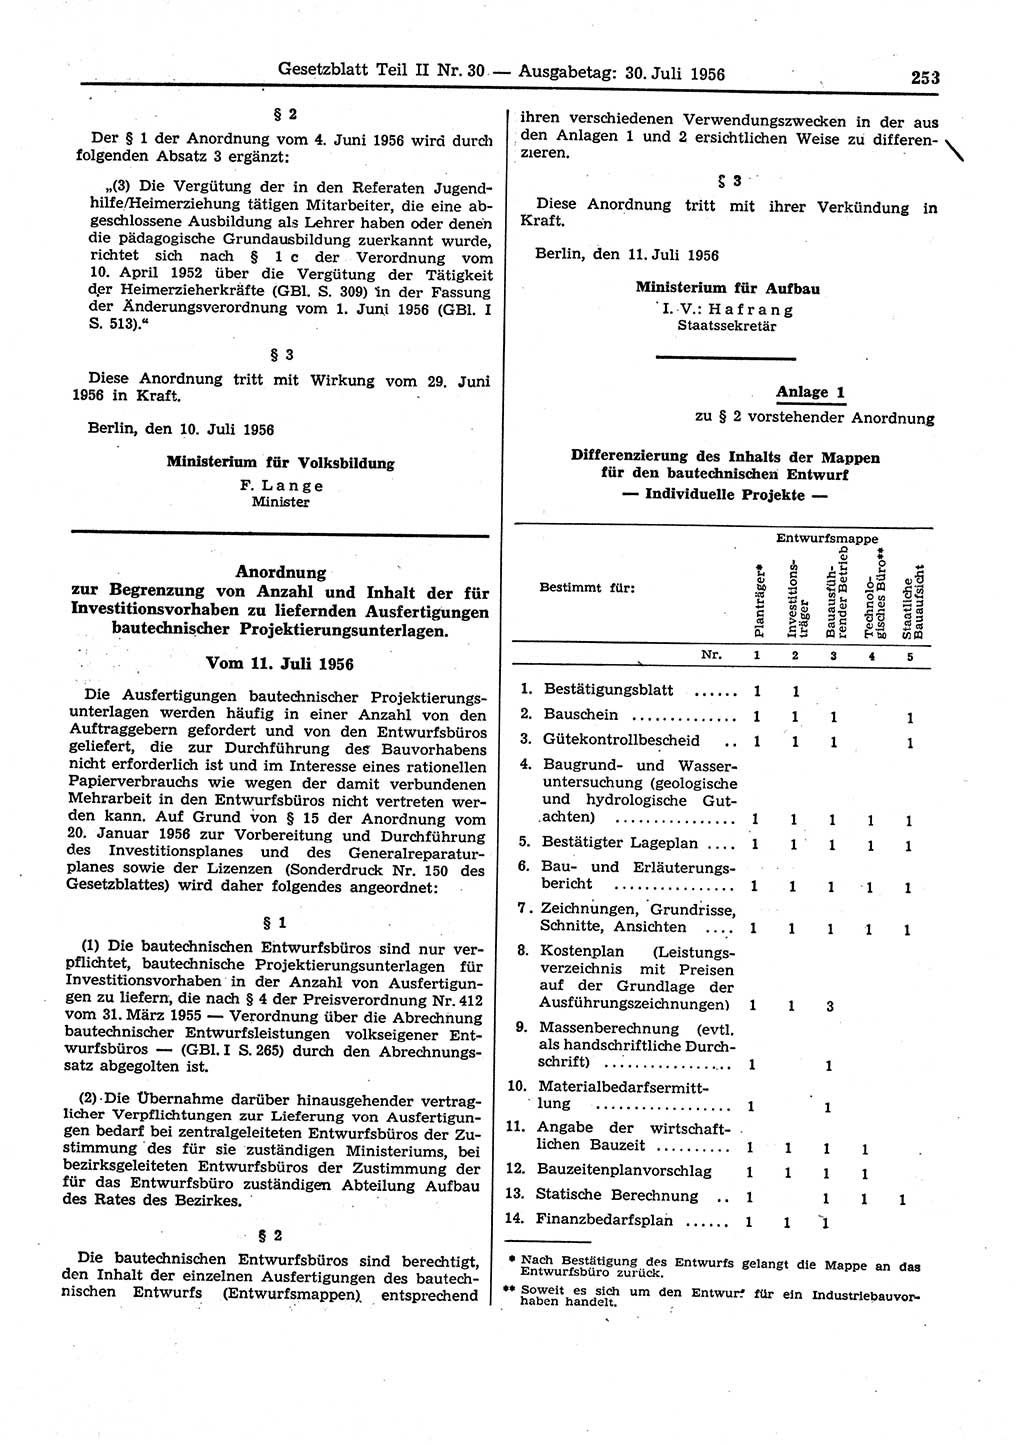 Gesetzblatt (GBl.) der Deutschen Demokratischen Republik (DDR) Teil ⅠⅠ 1956, Seite 253 (GBl. DDR ⅠⅠ 1956, S. 253)